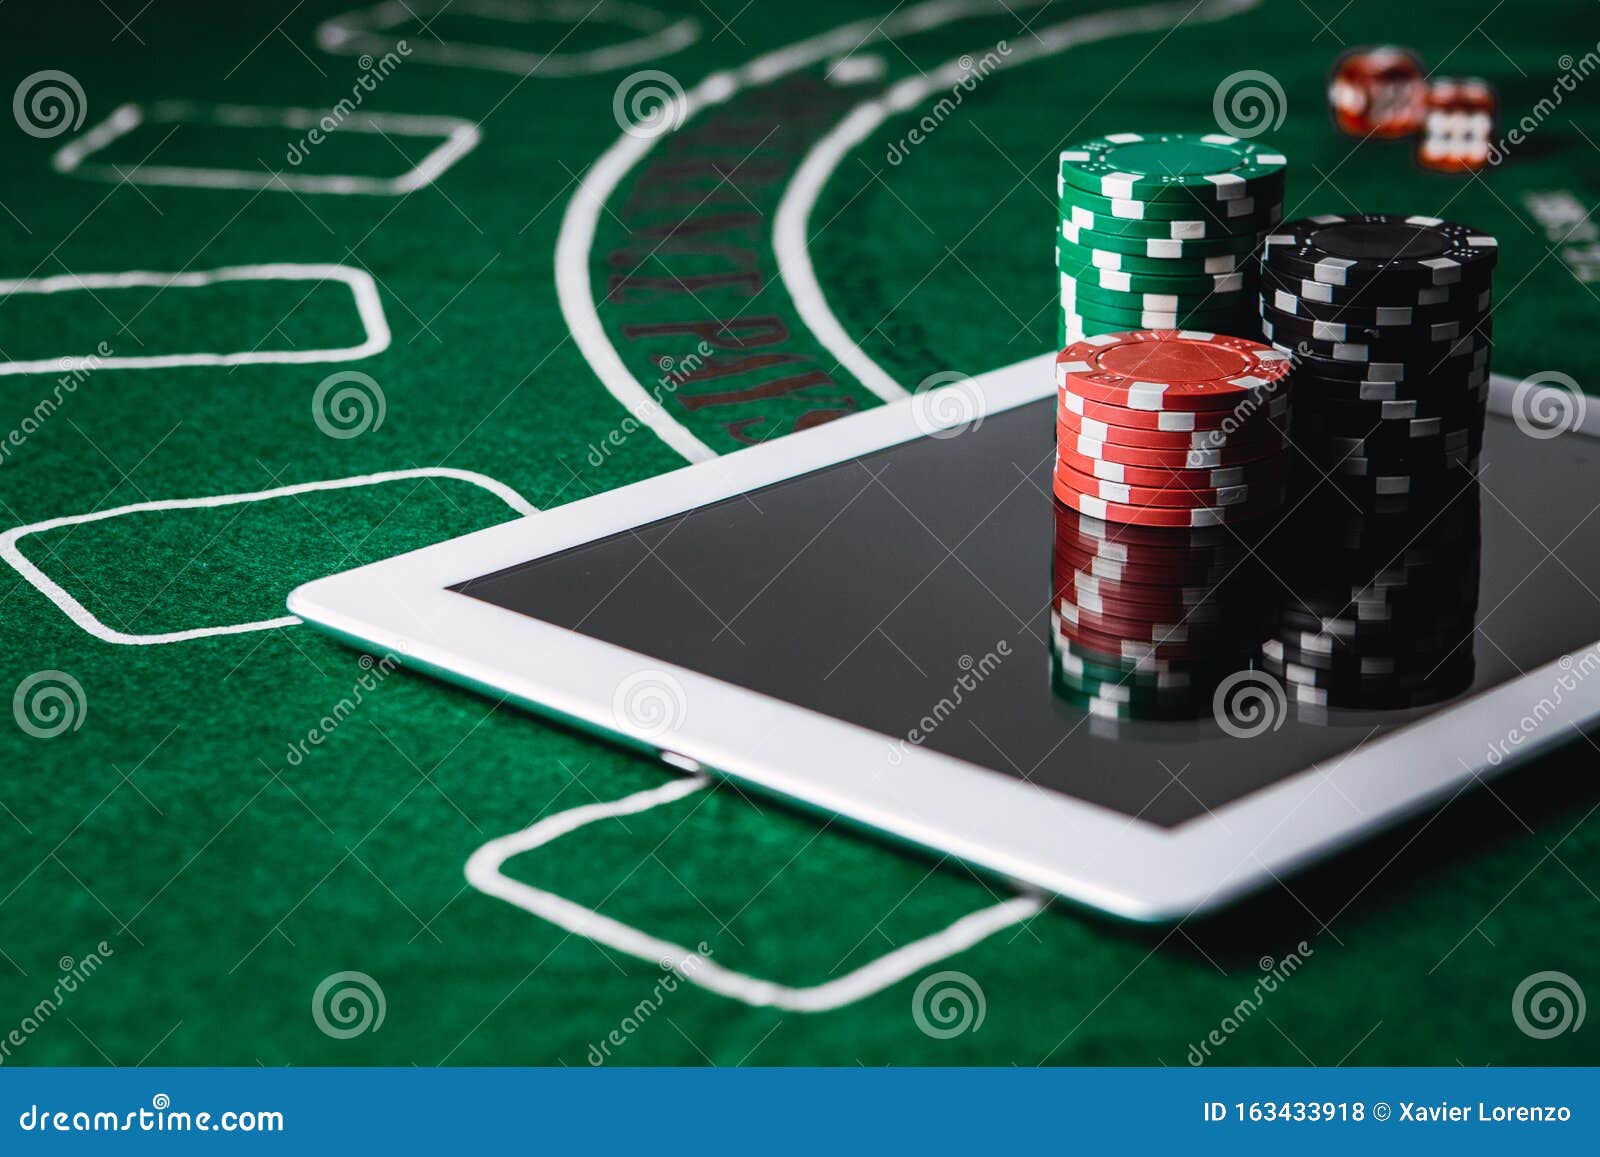 Казино онлайн ставки боб казино отзывы